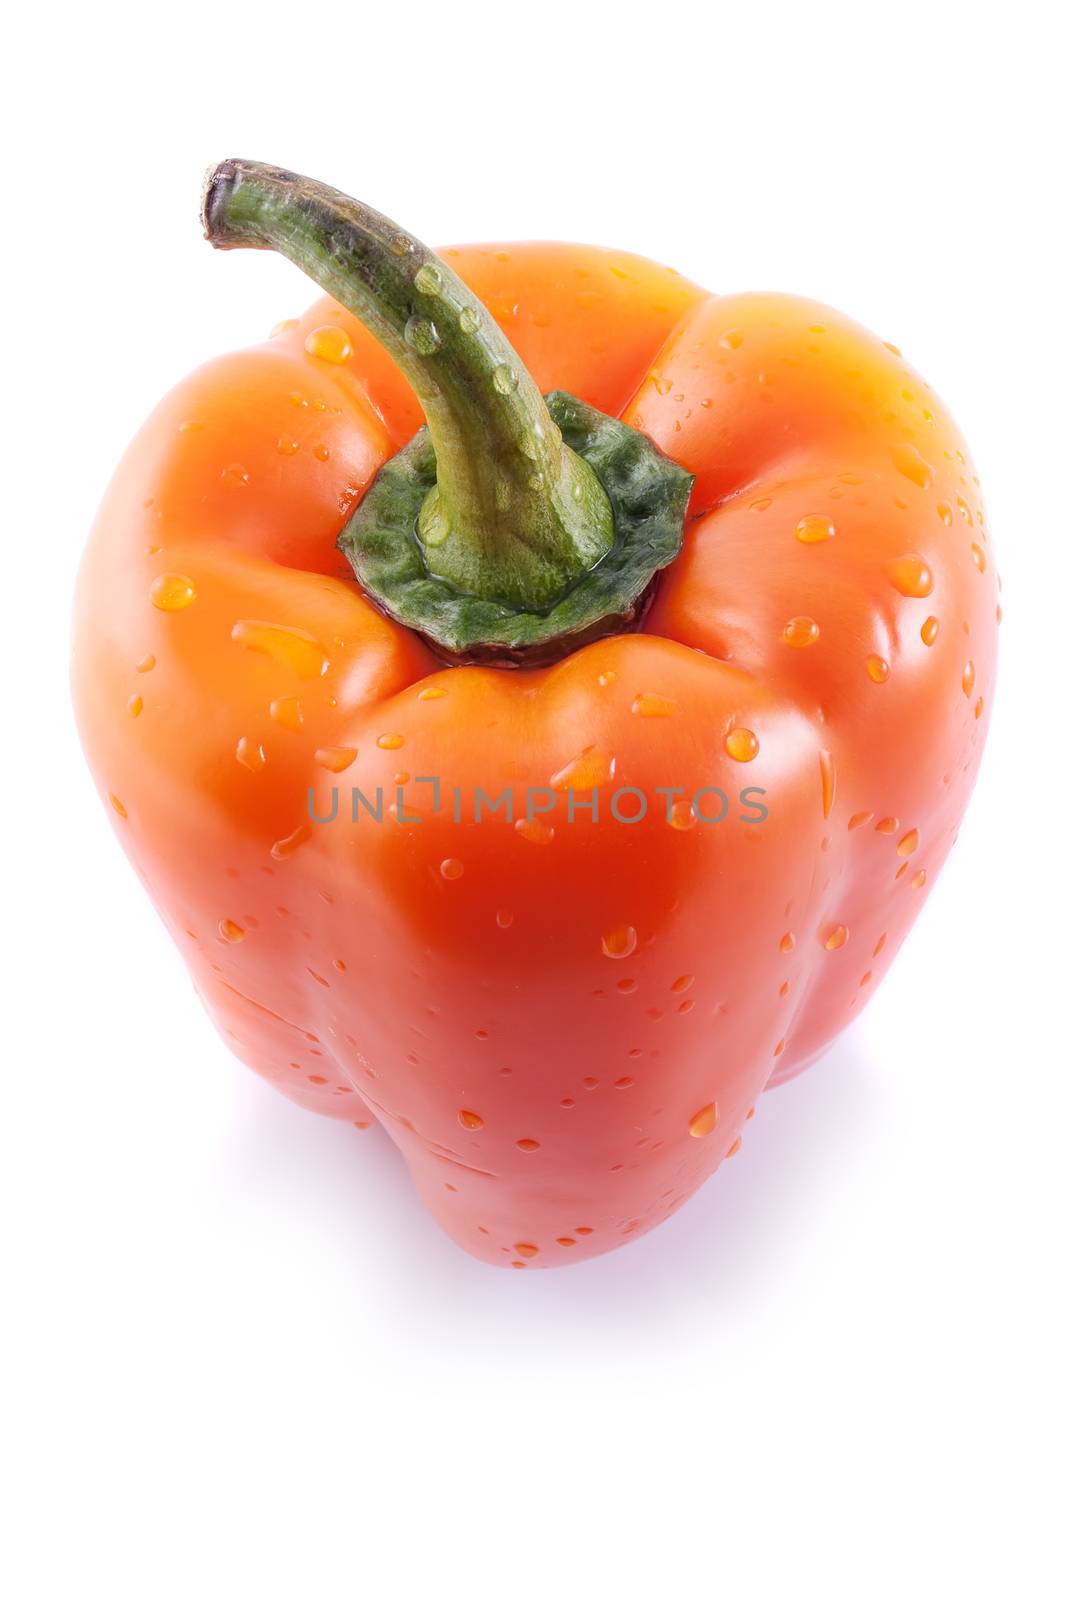 Juicy orange pepper by baronvsp